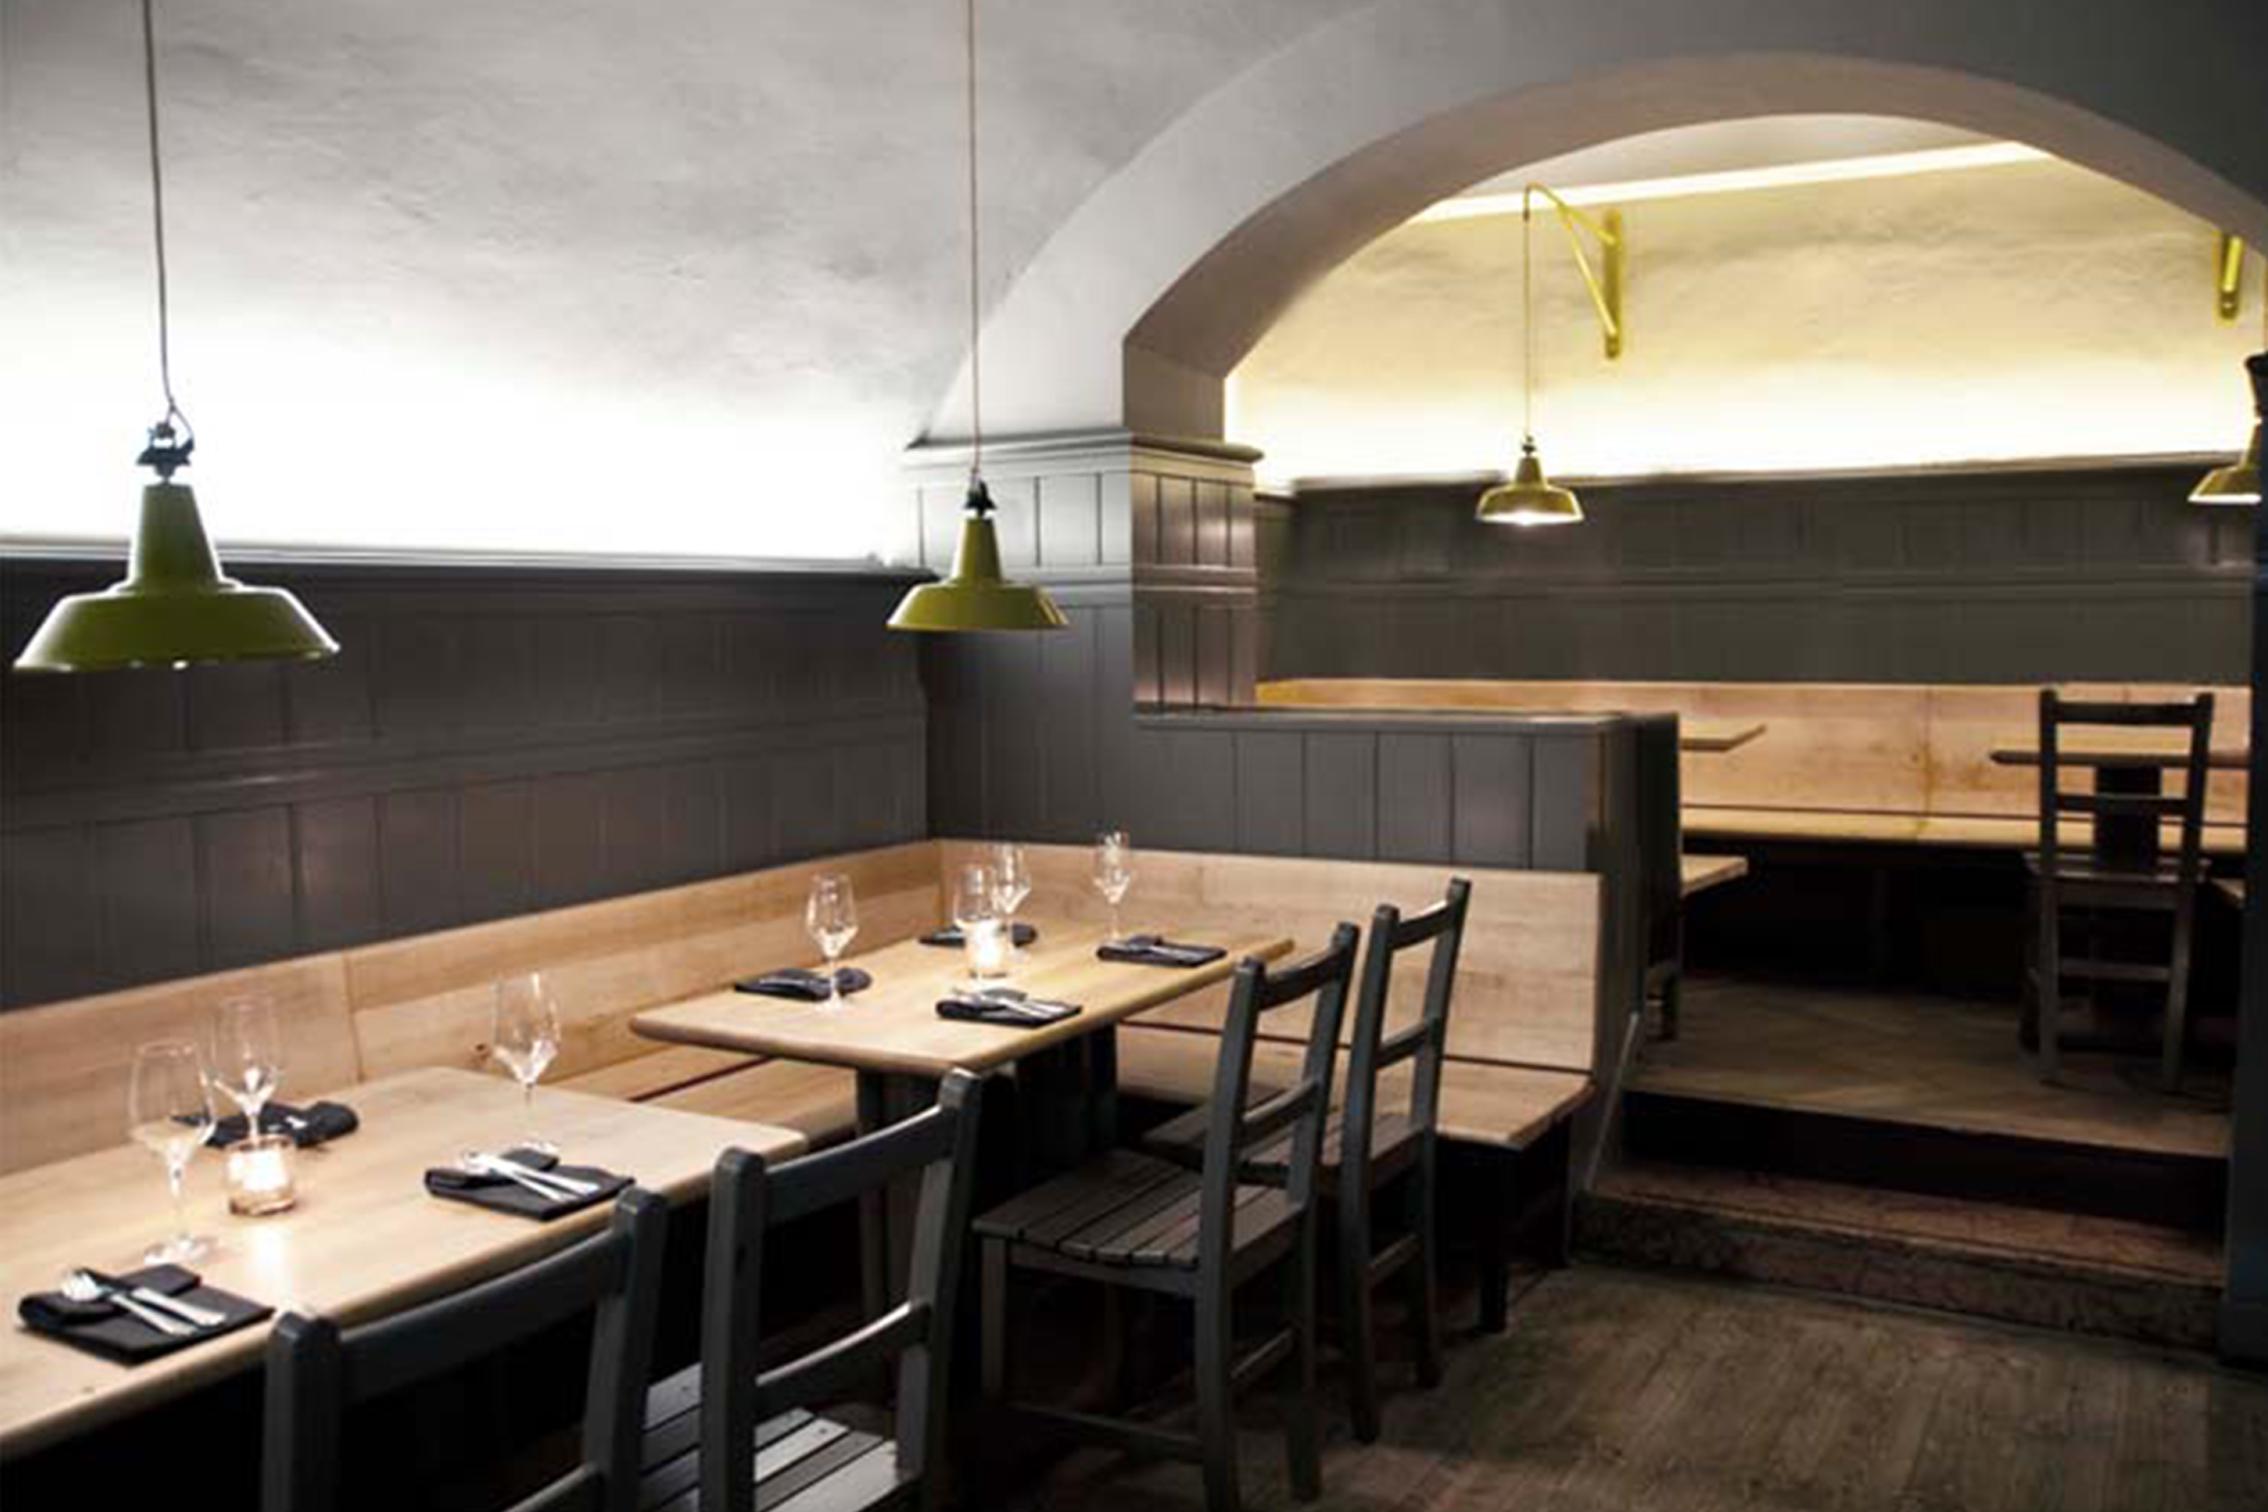 Gasthaus Specht
Wien
#bar #restaurant #innenarchitektur #modern #interiordesign 
©Gasthaus Specht @Destilat